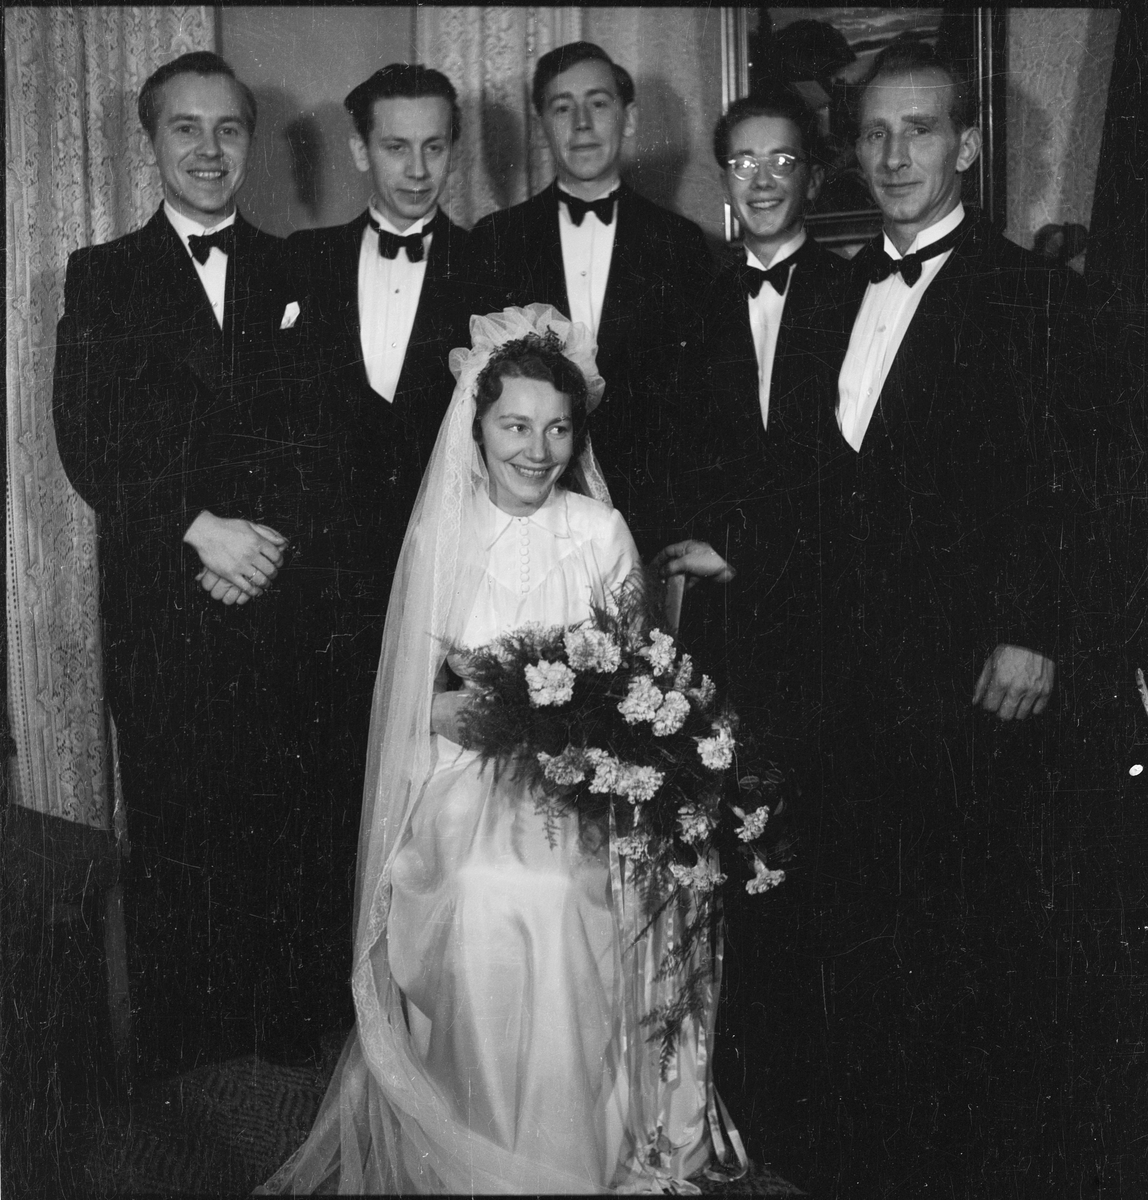 Bruden Dorthea Netland (født Seglem) og hennes mann med deres familier.